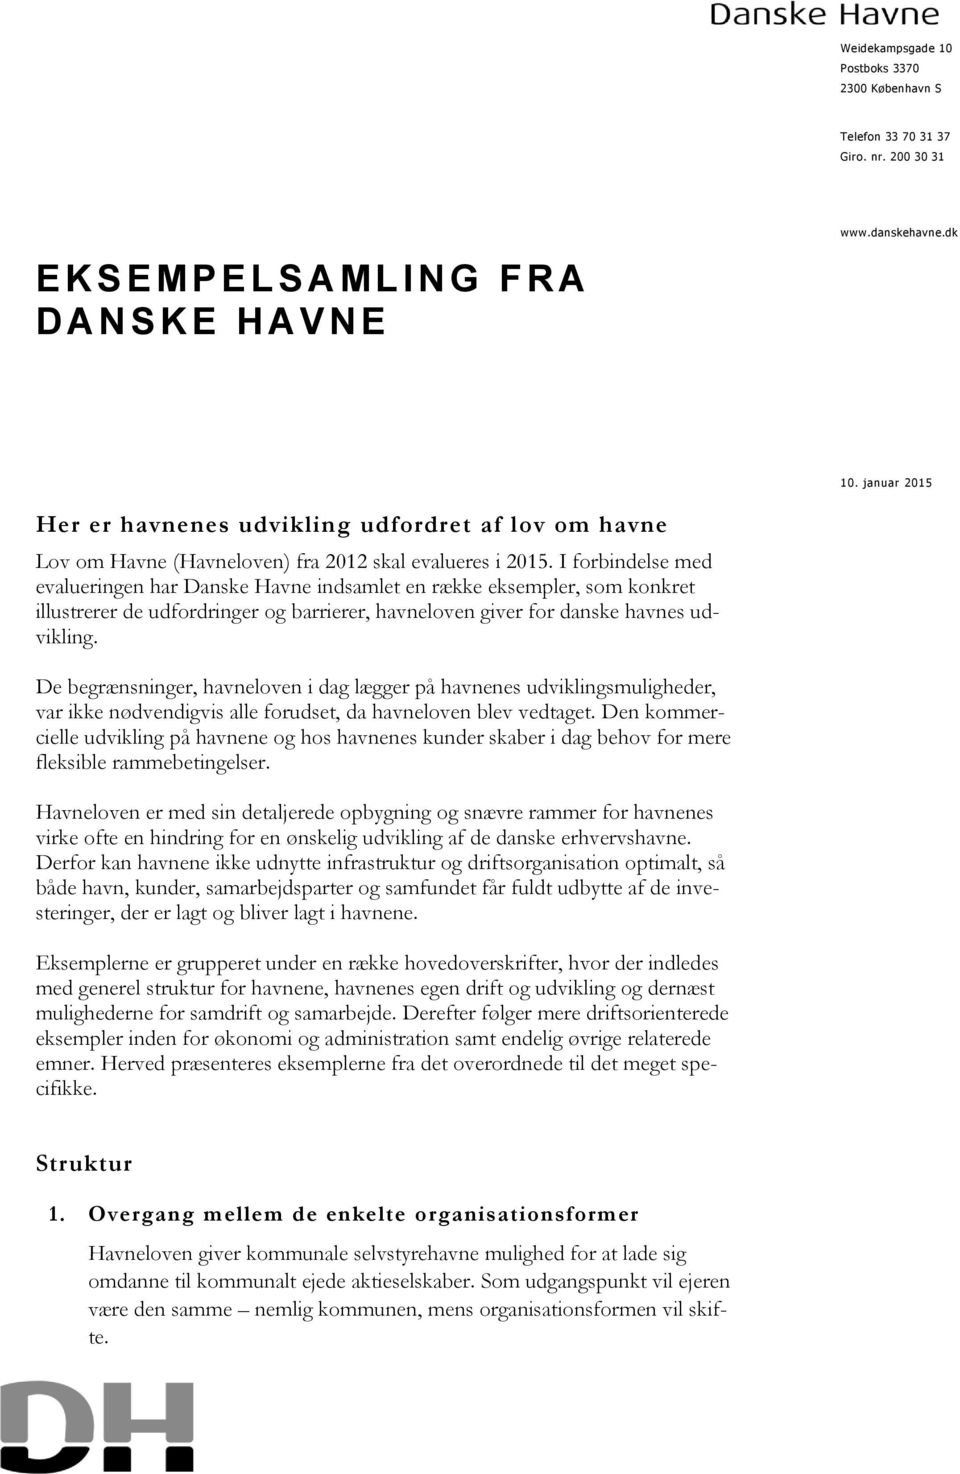 I forbindelse med evalueringen har Danske Havne indsamlet en række eksempler, som konkret illustrerer de udfordringer og barrierer, havneloven giver for danske havnes udvikling.